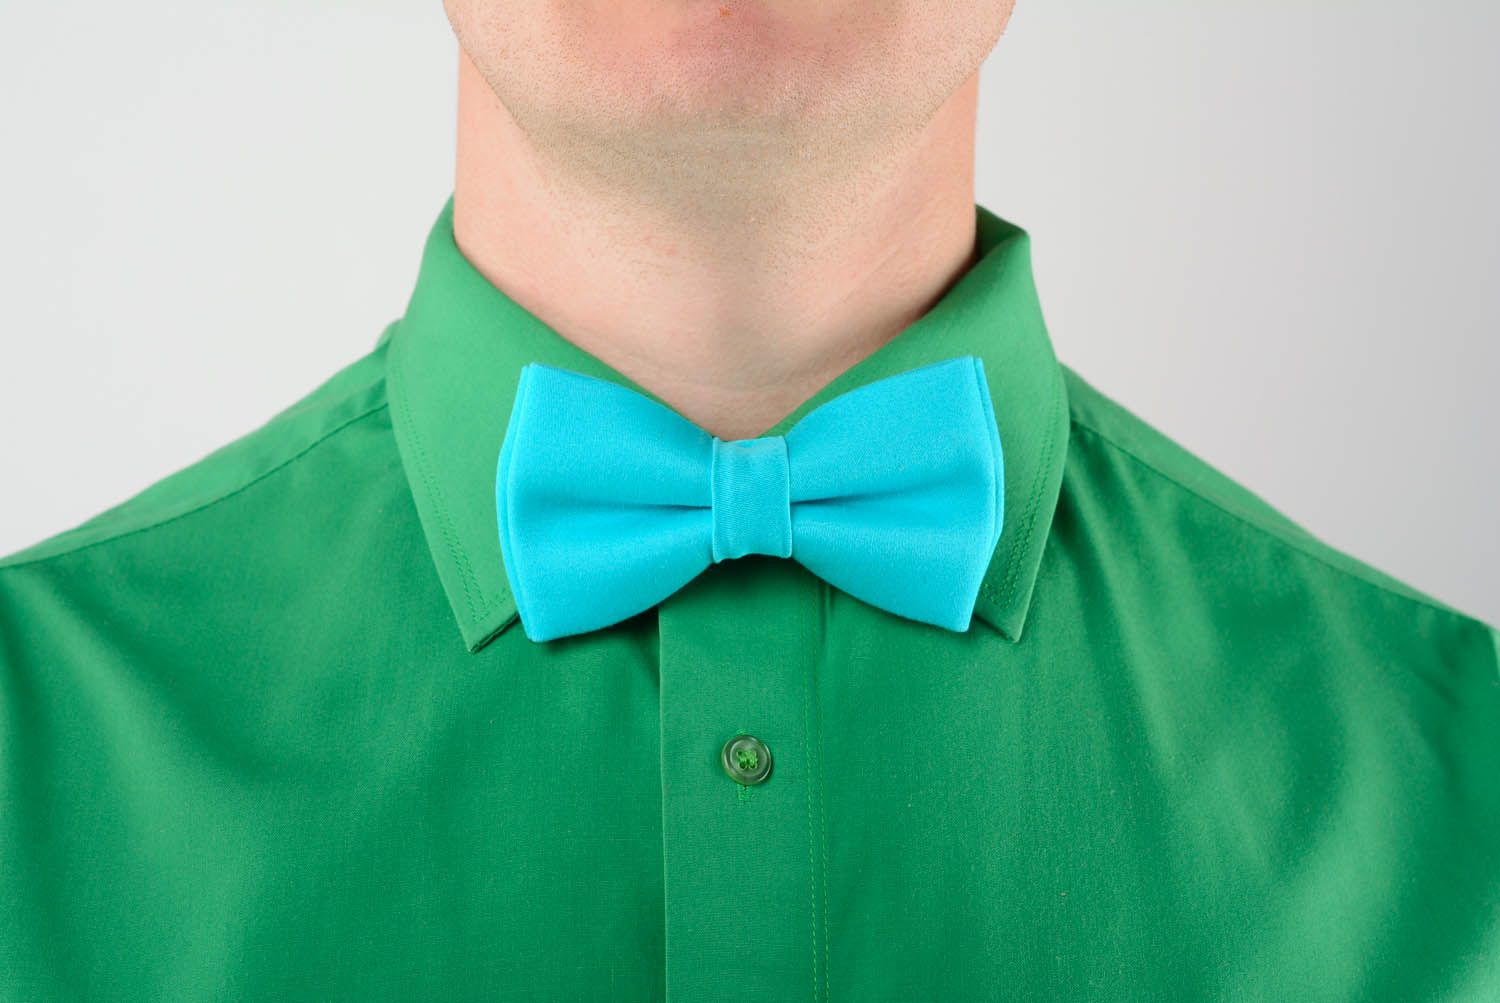 Turquoise bow tie photo 1